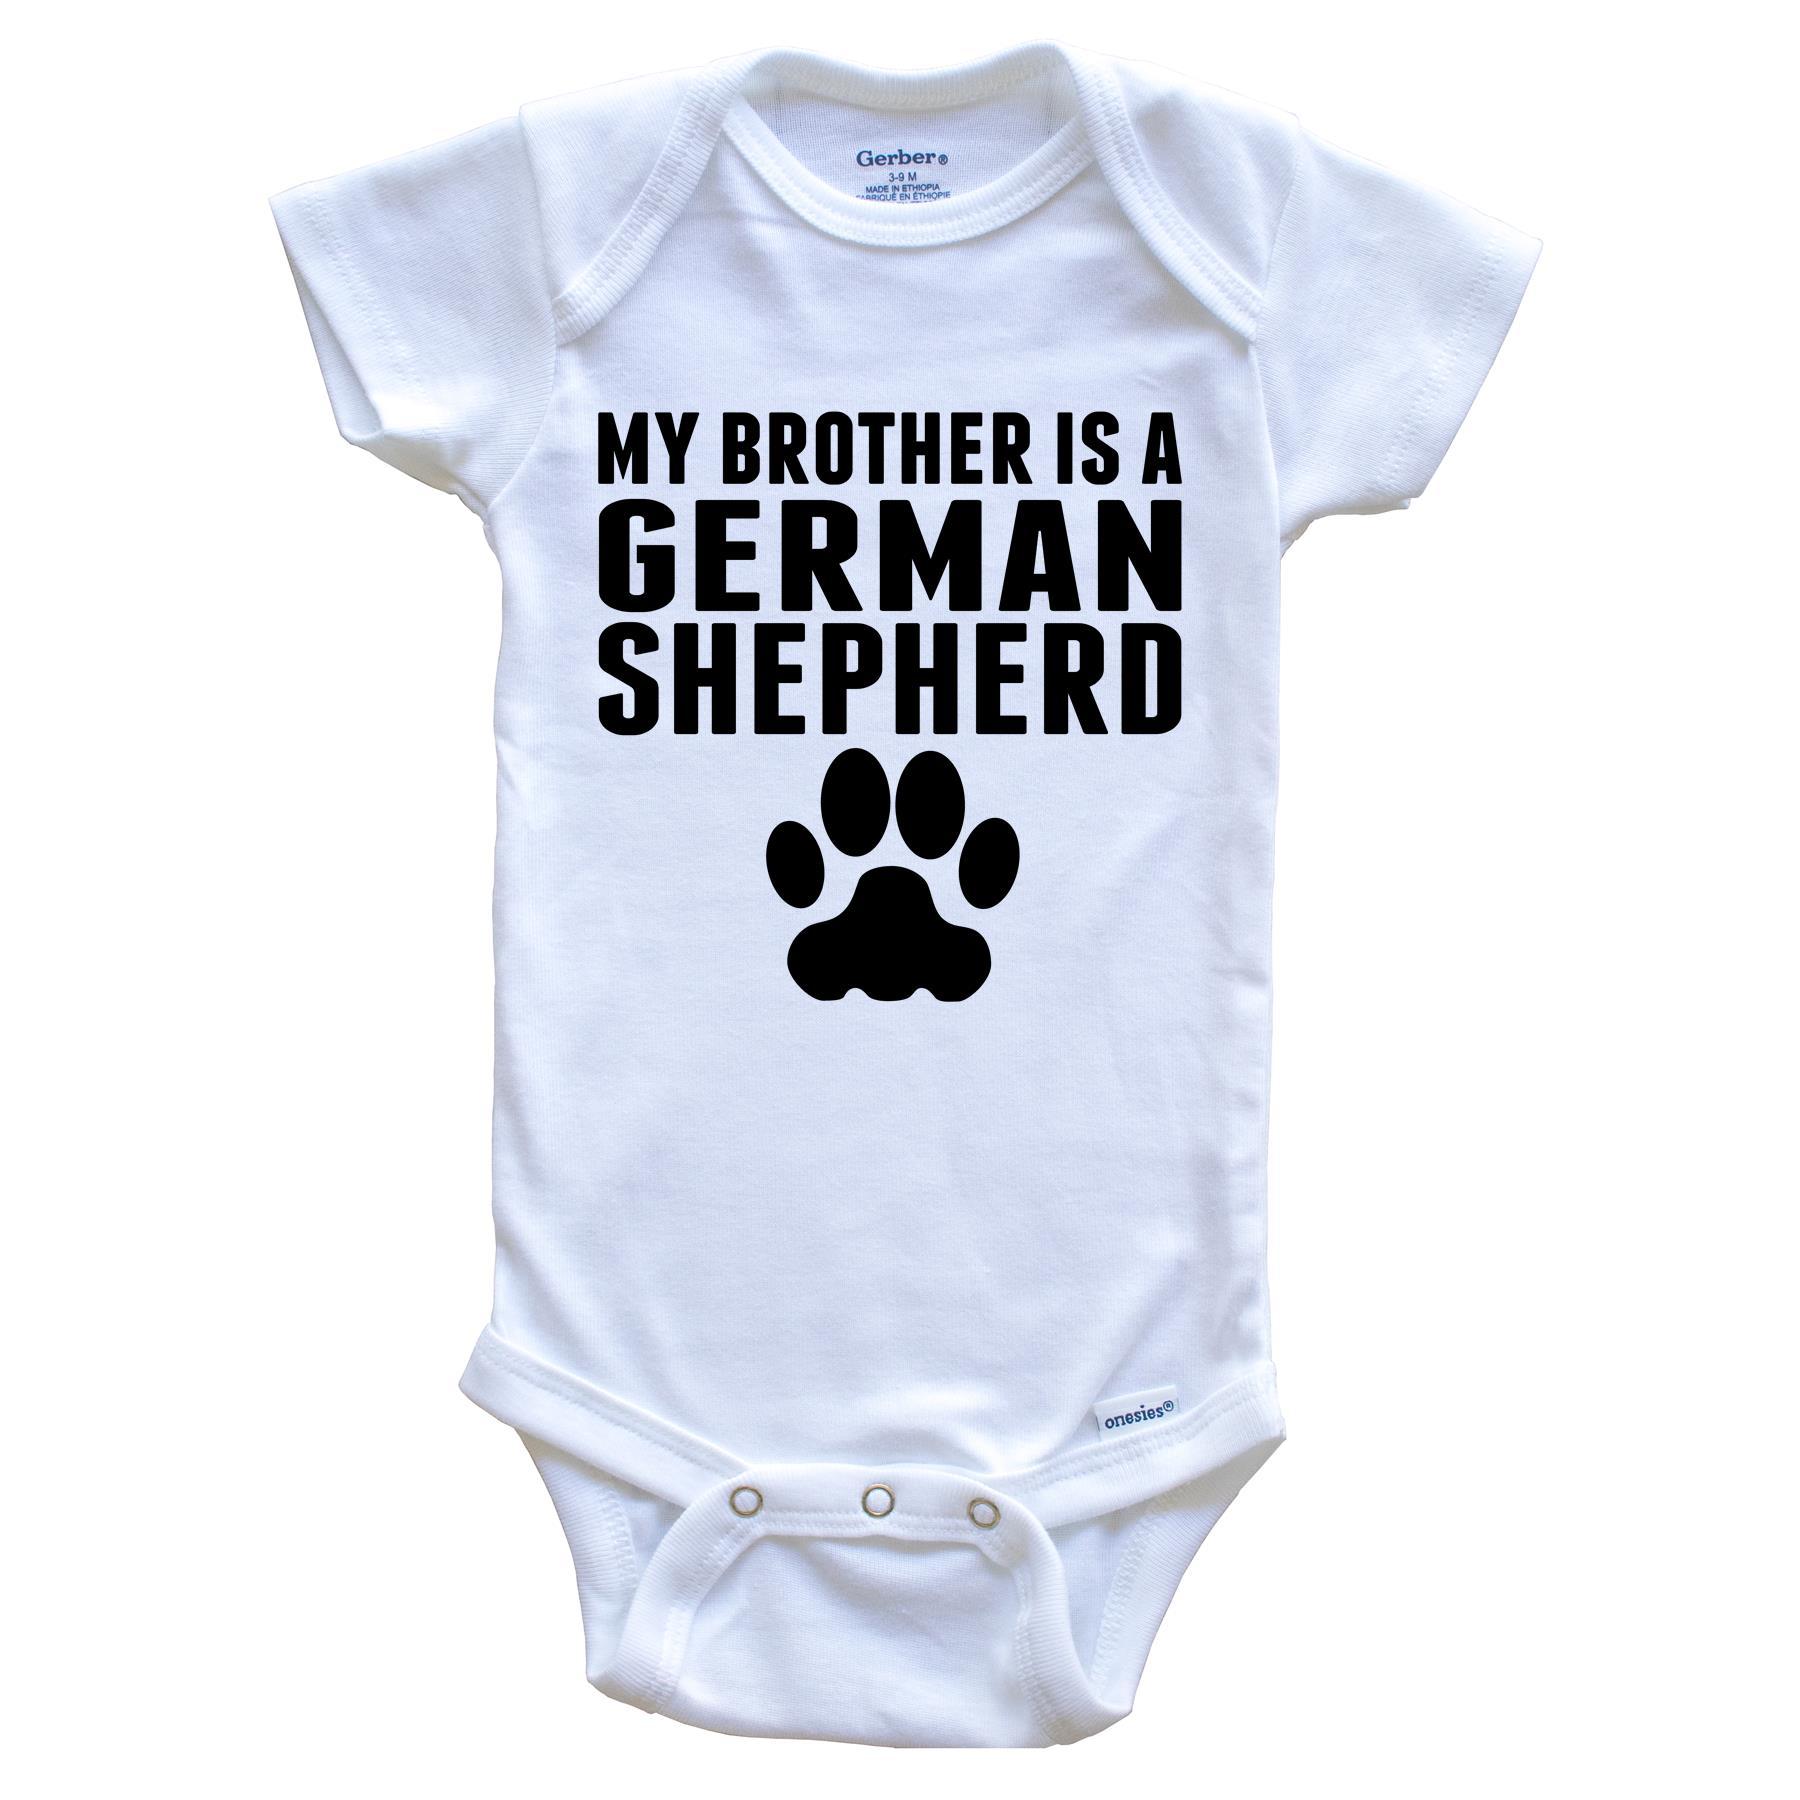 My Brother Is A German Shepherd Baby Onesie